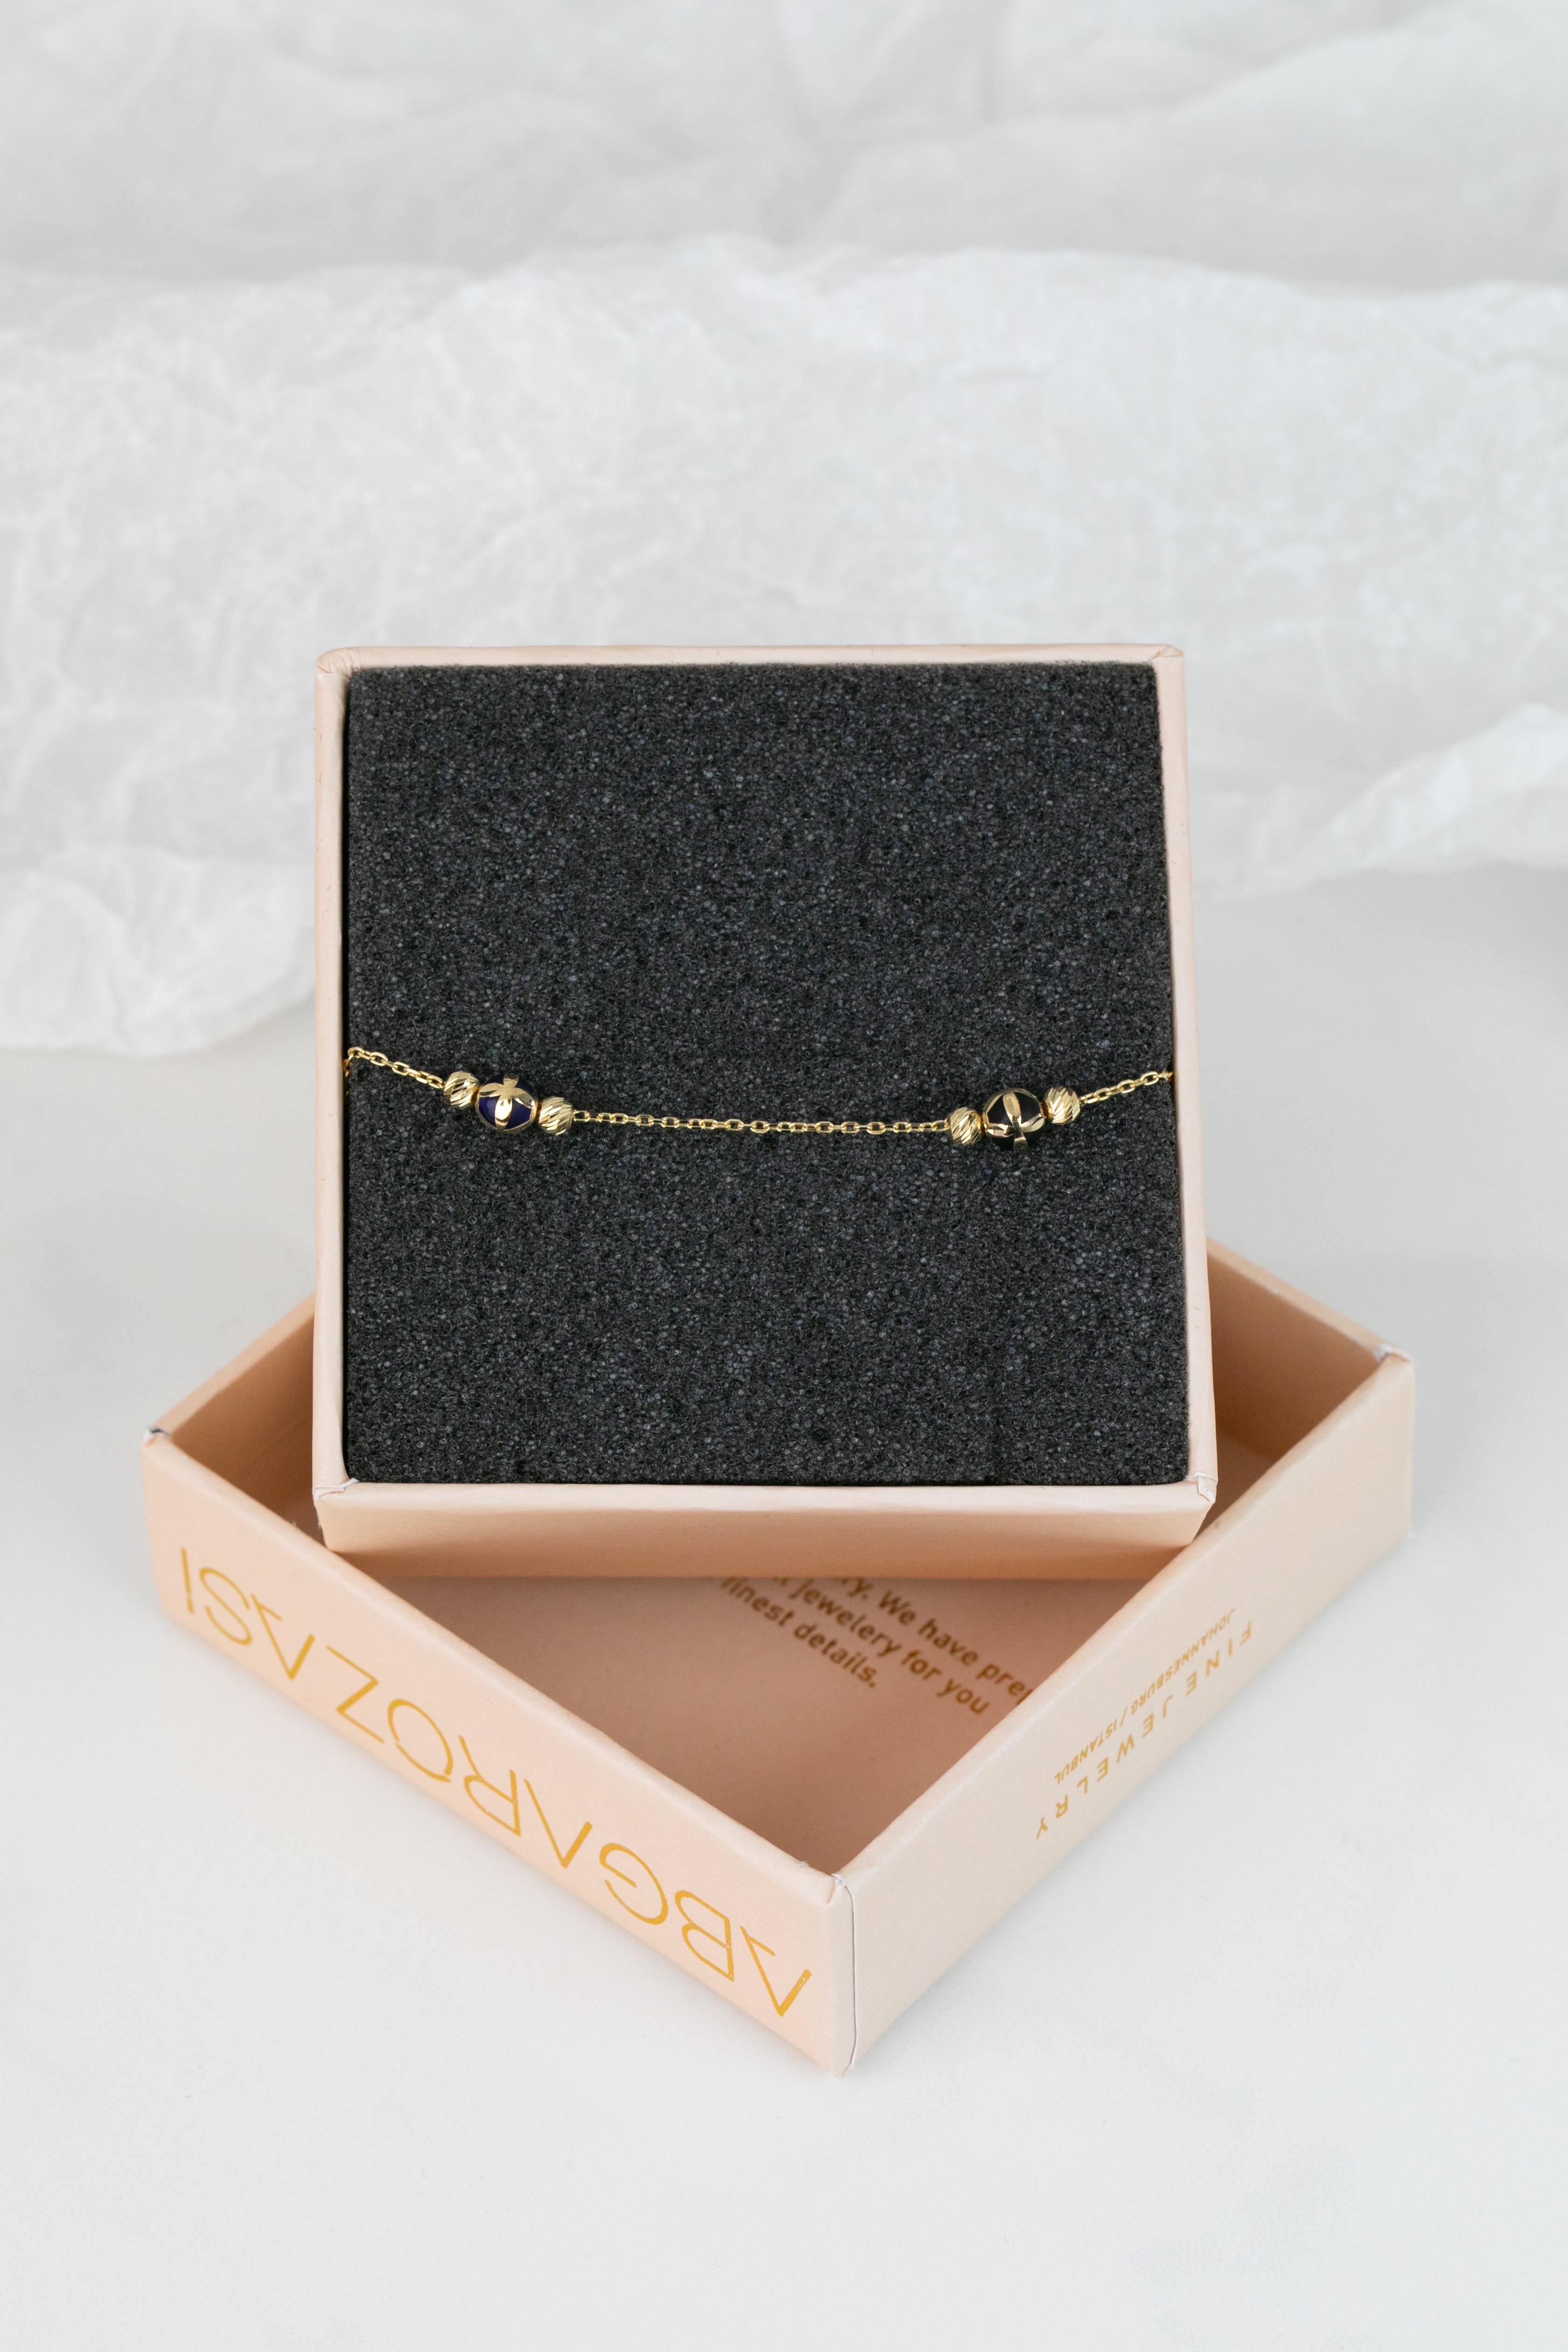 14k Gold Bracelet Black Enameled and Dorica Collected Model Bracelet For Sale 3